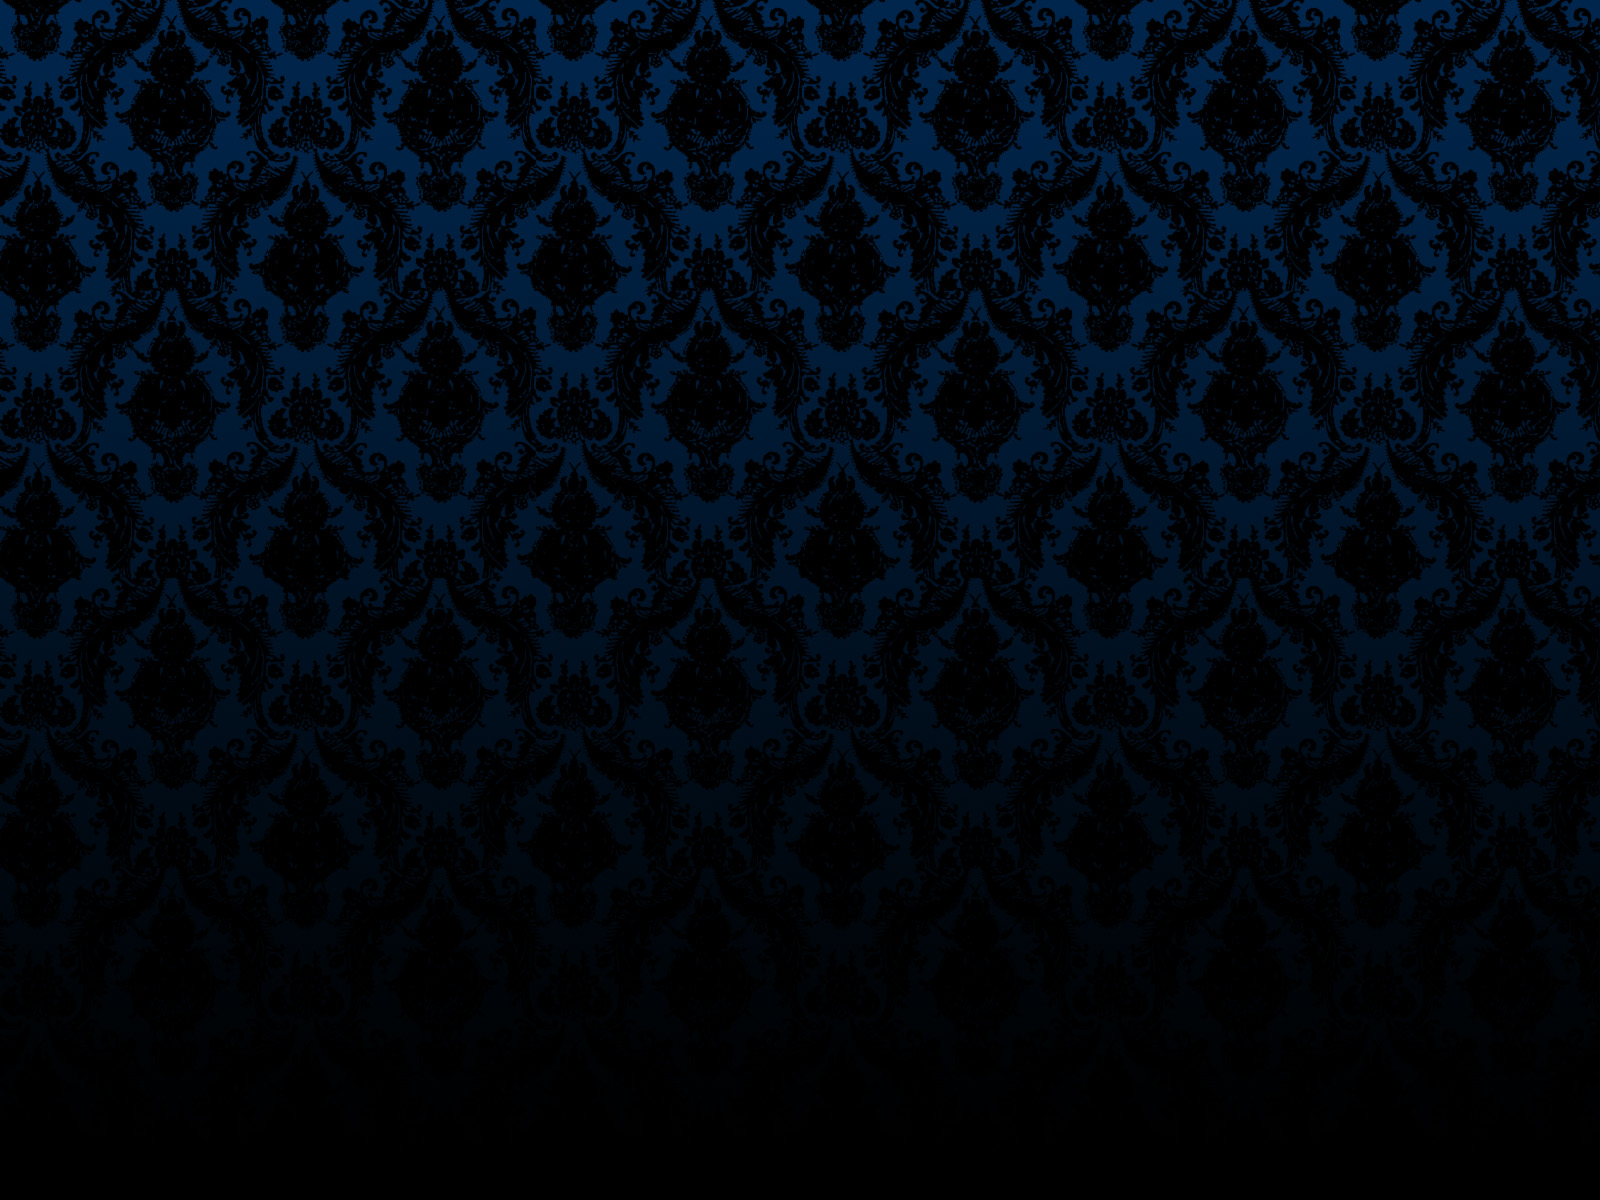 Dark Blue Wallpaper by malkowitch on DeviantArt